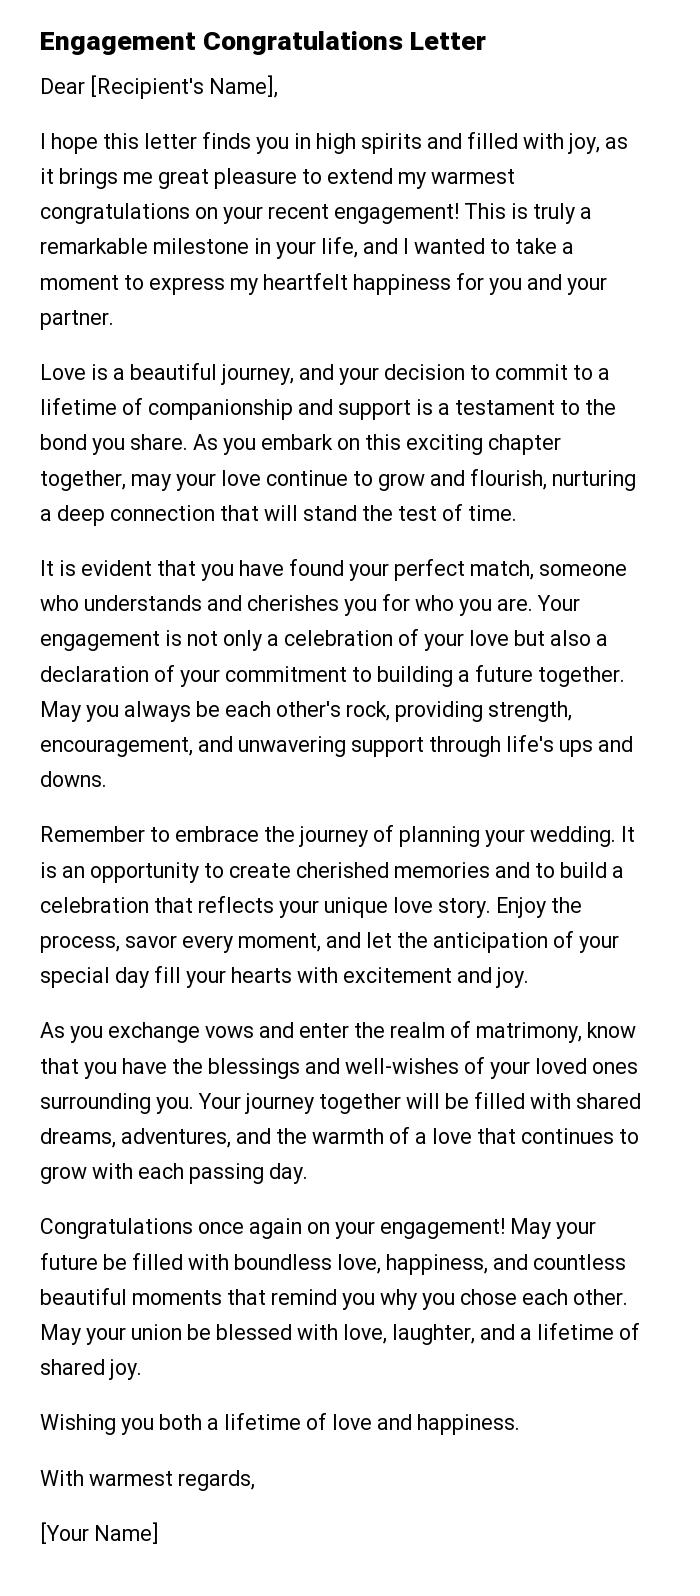 Engagement Congratulations Letter